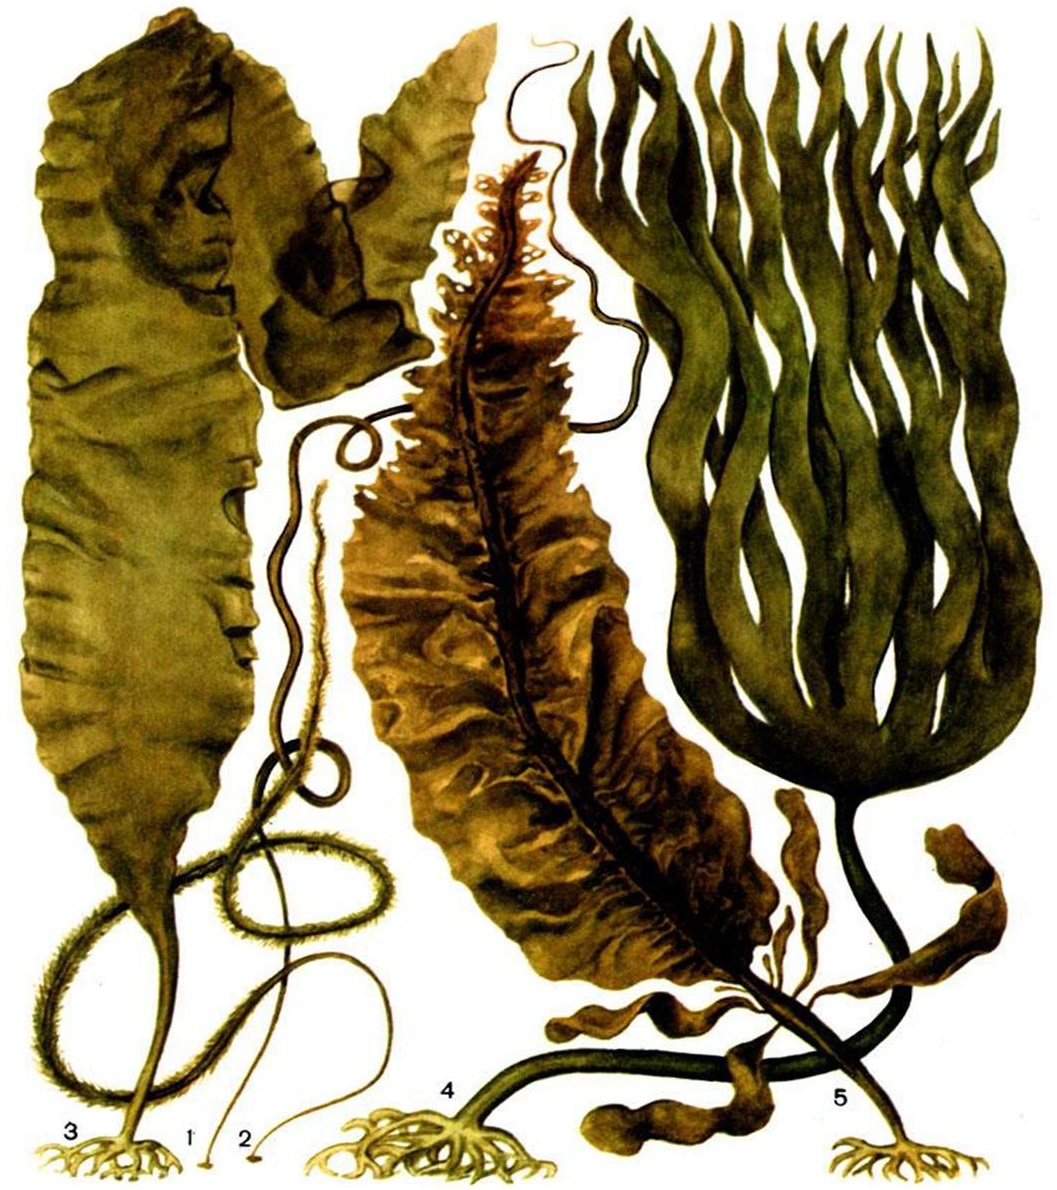 Культура водорослей. Бурые водоросли ламинария. Ламинариевые бурые водоросли. Отдел бурые водоросли – Phaeophyta. Ламинария сахаристая и пальчаторассеченная.